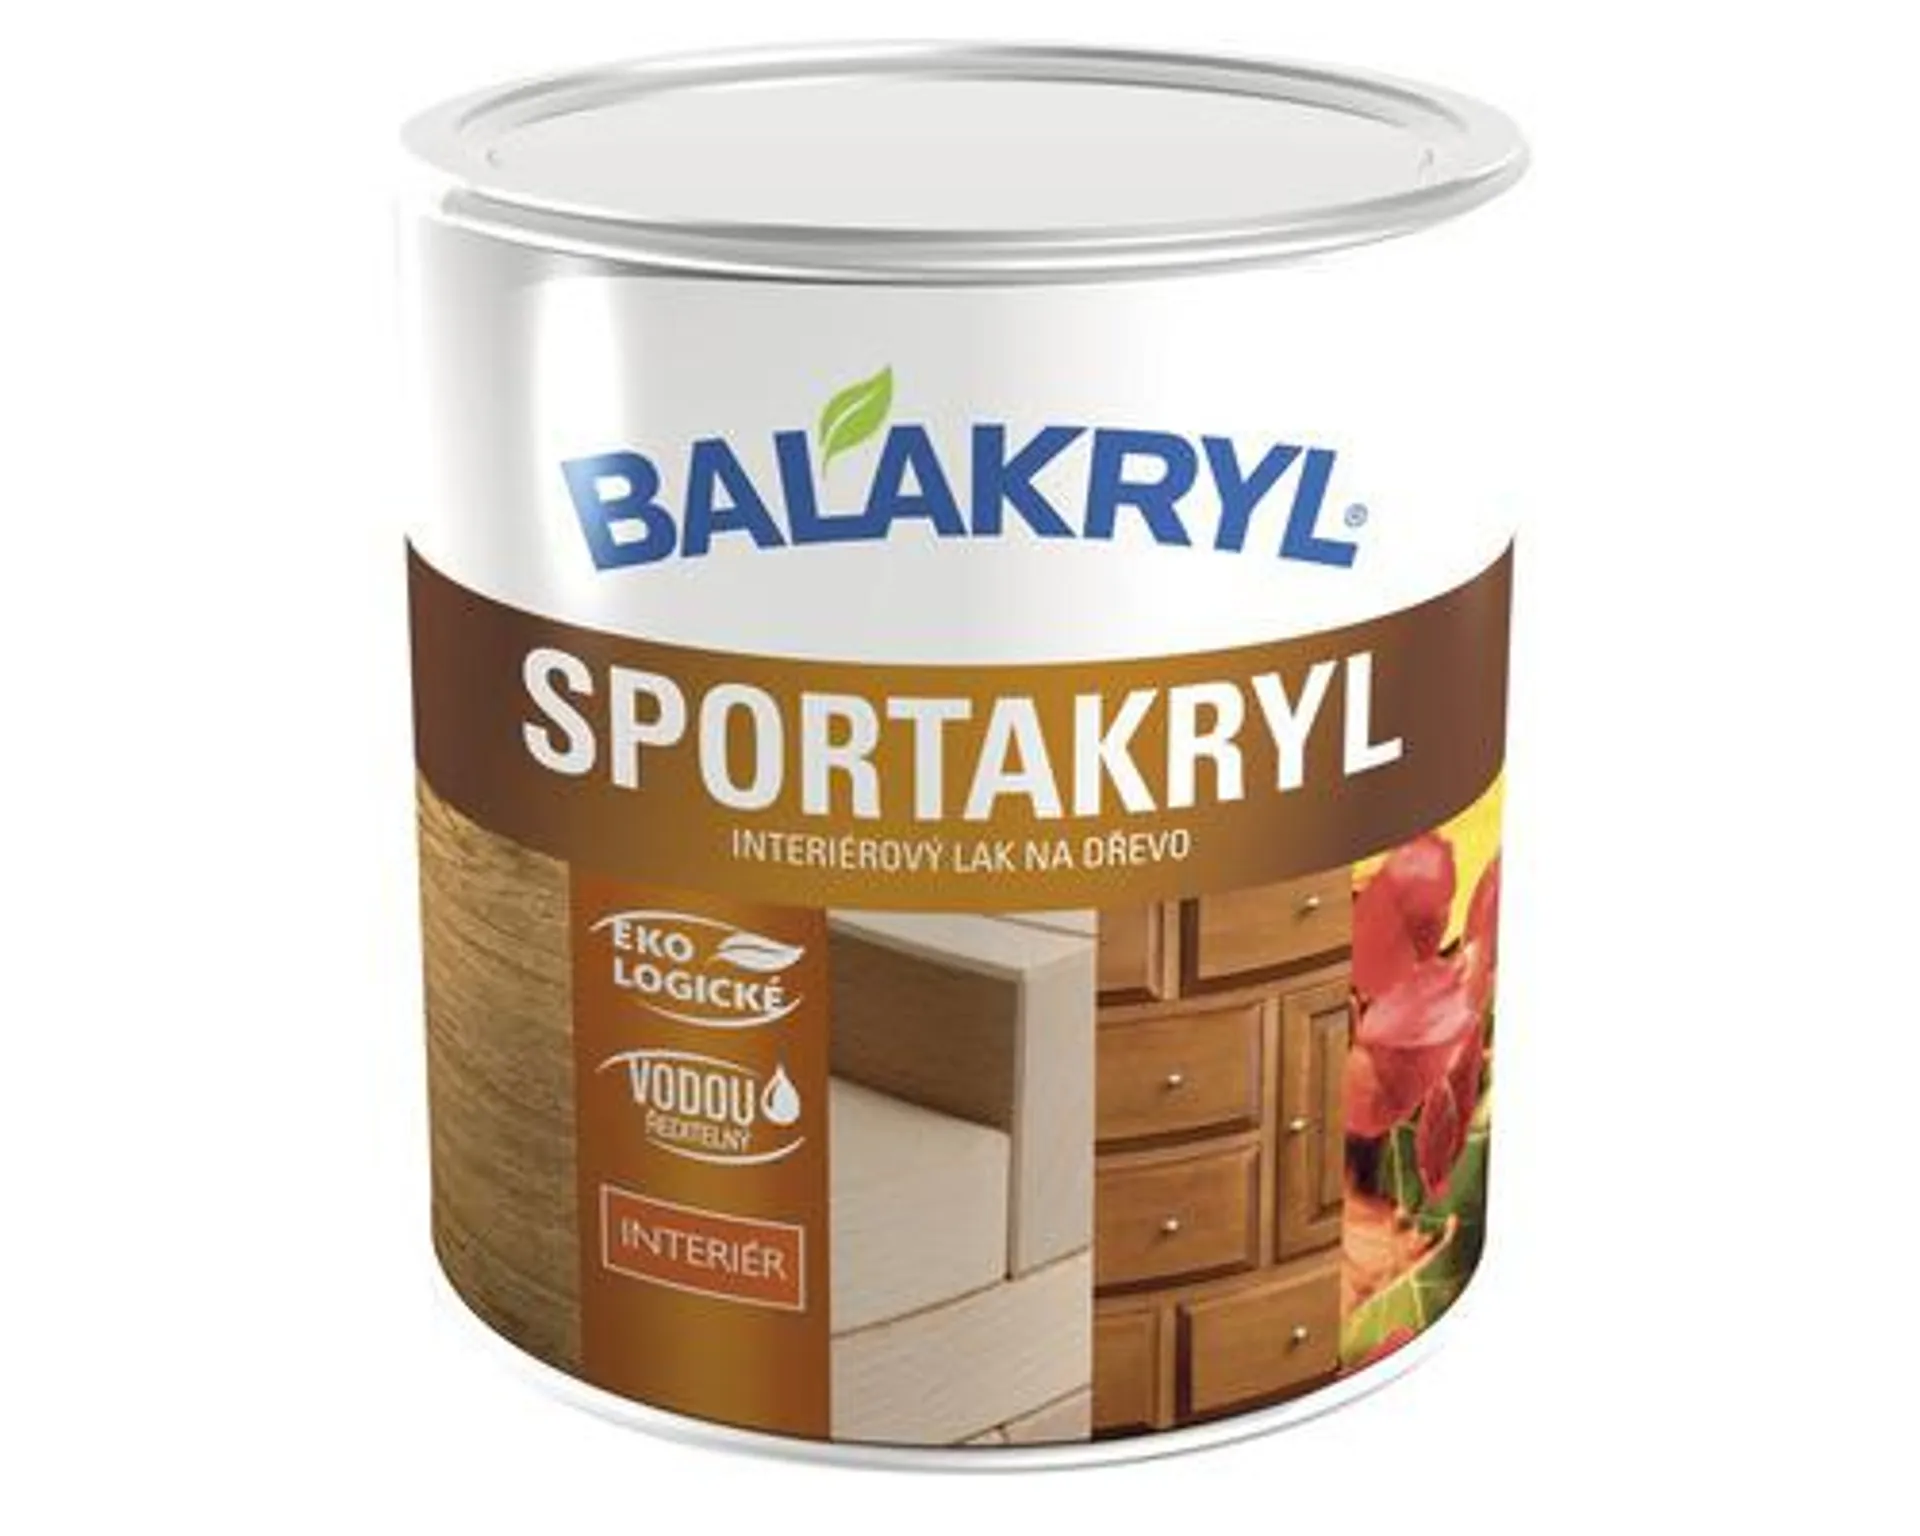 Interiérový lak na drevo Balakryl Sportakryl V1601 bezfarebný, matný 0,7 kg ekologicky šetrné